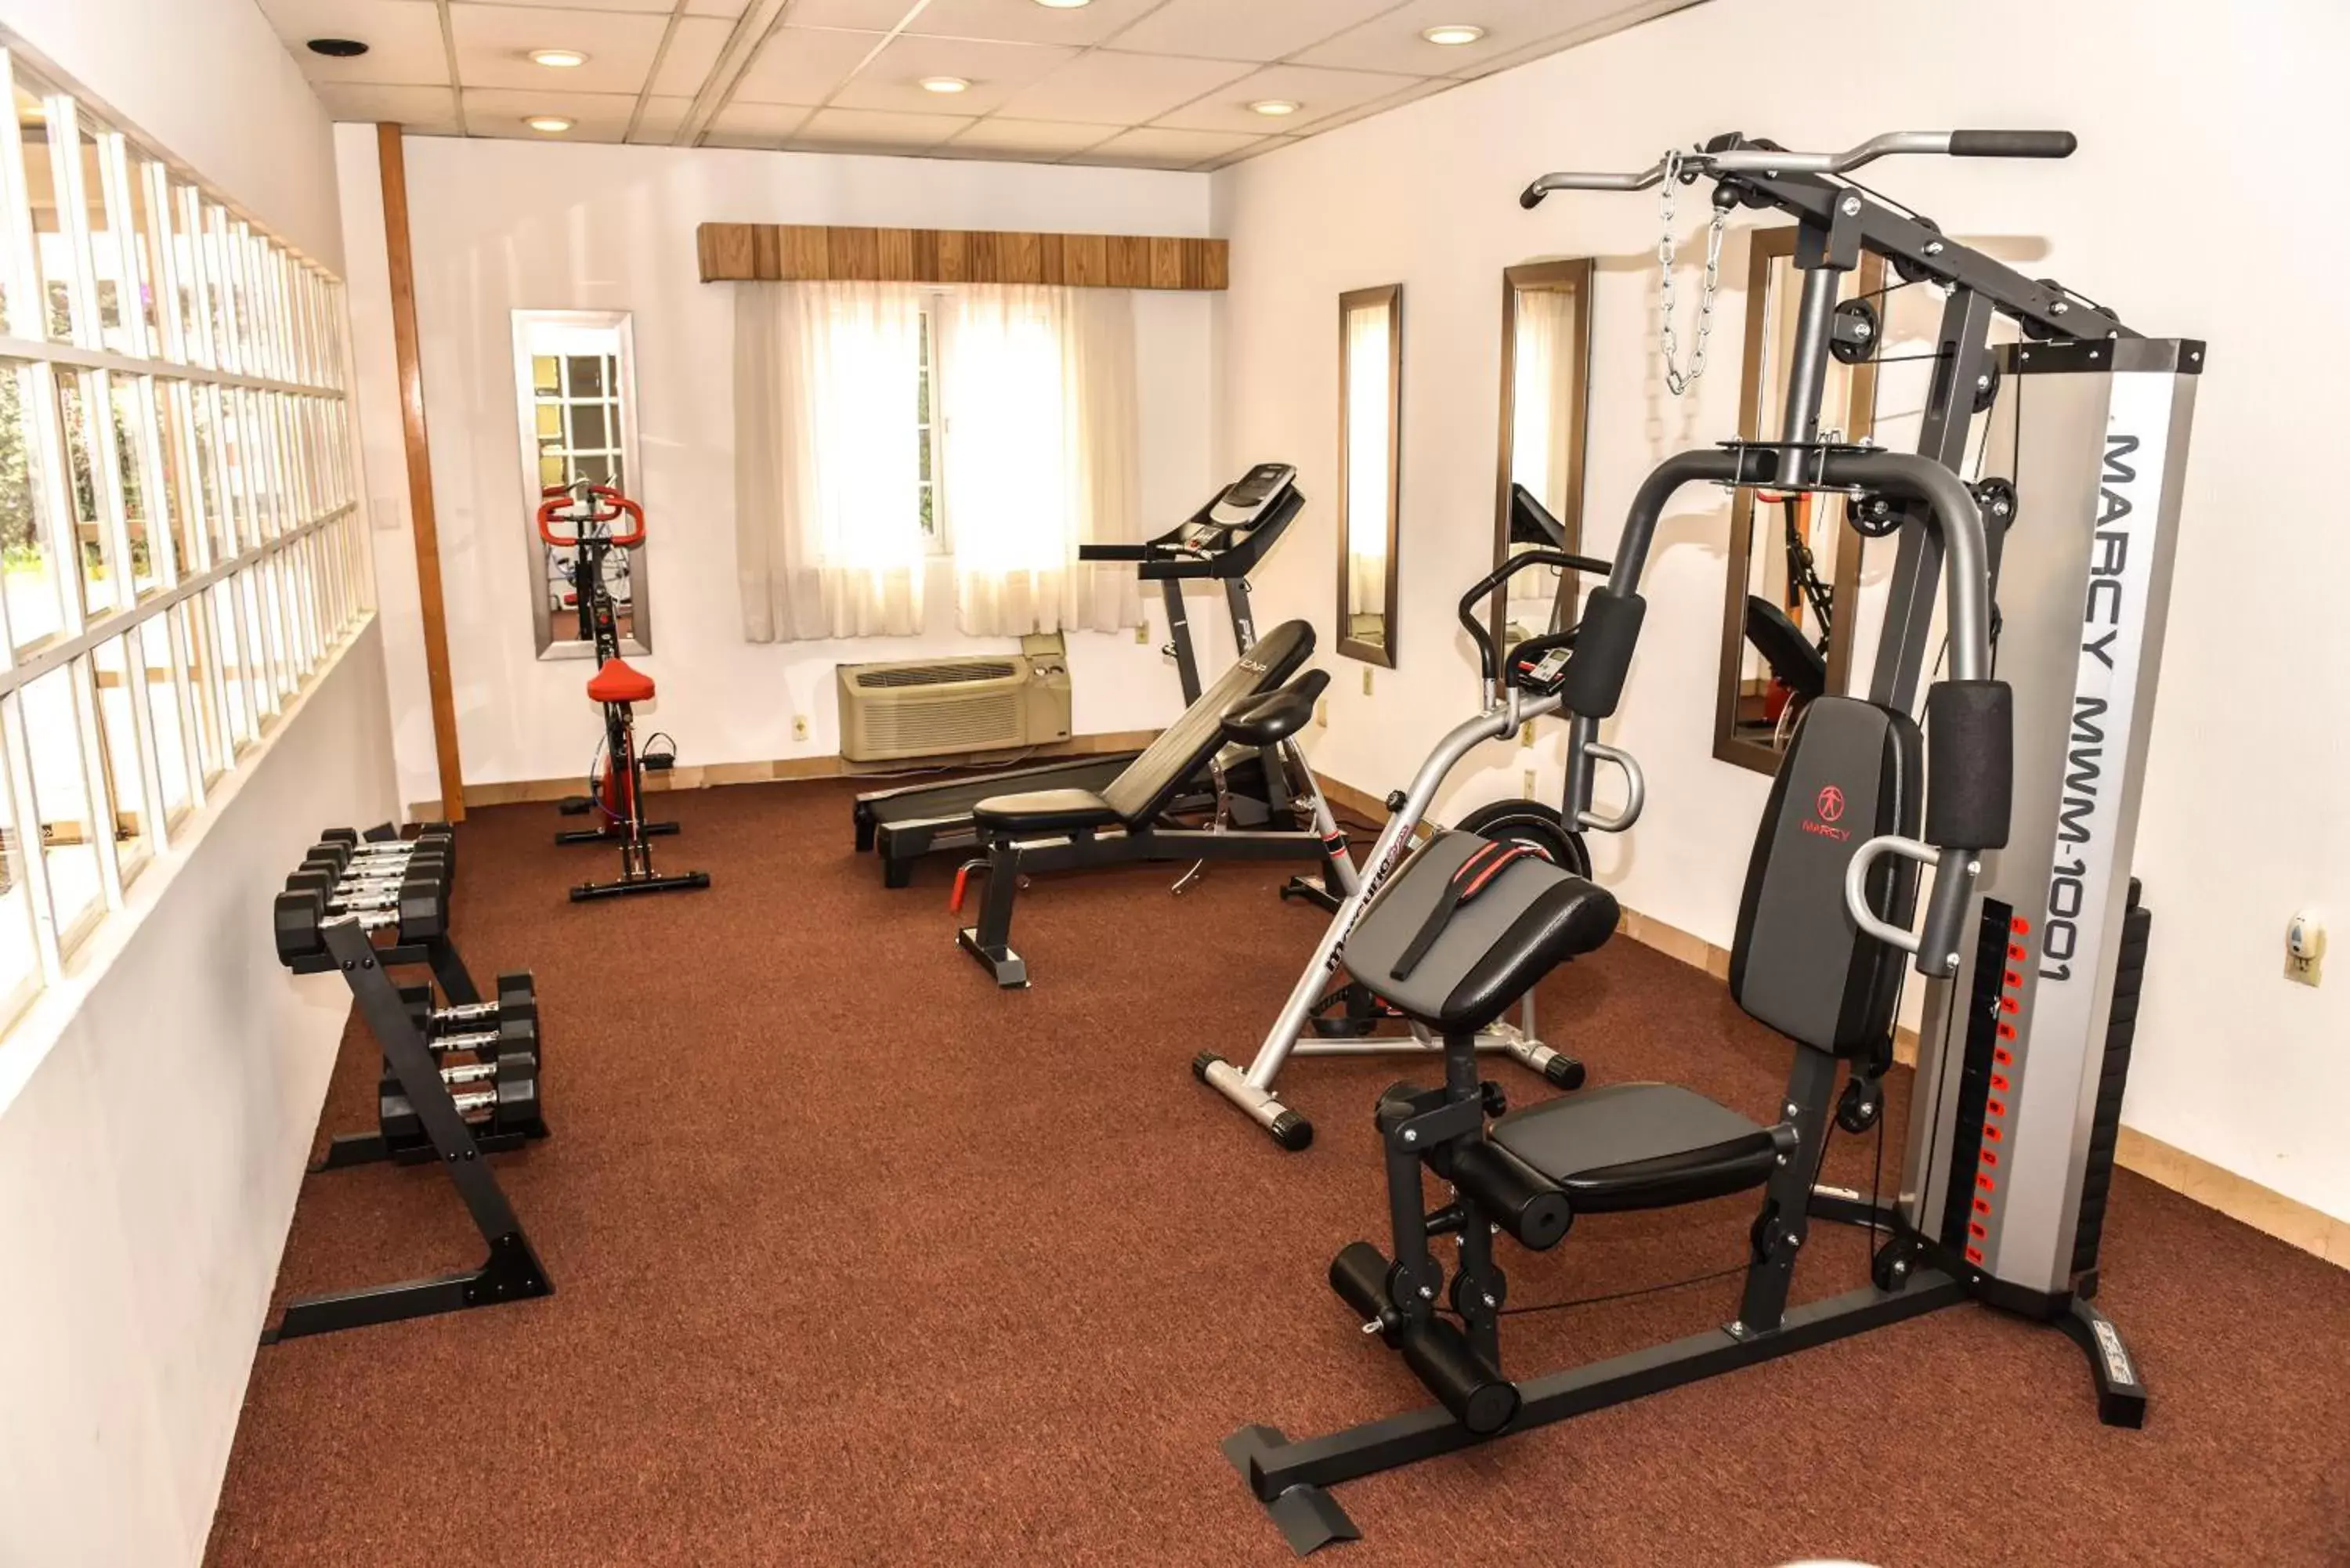 Fitness centre/facilities, Fitness Center/Facilities in Hotel Oliver Inn - Tlalnepantla